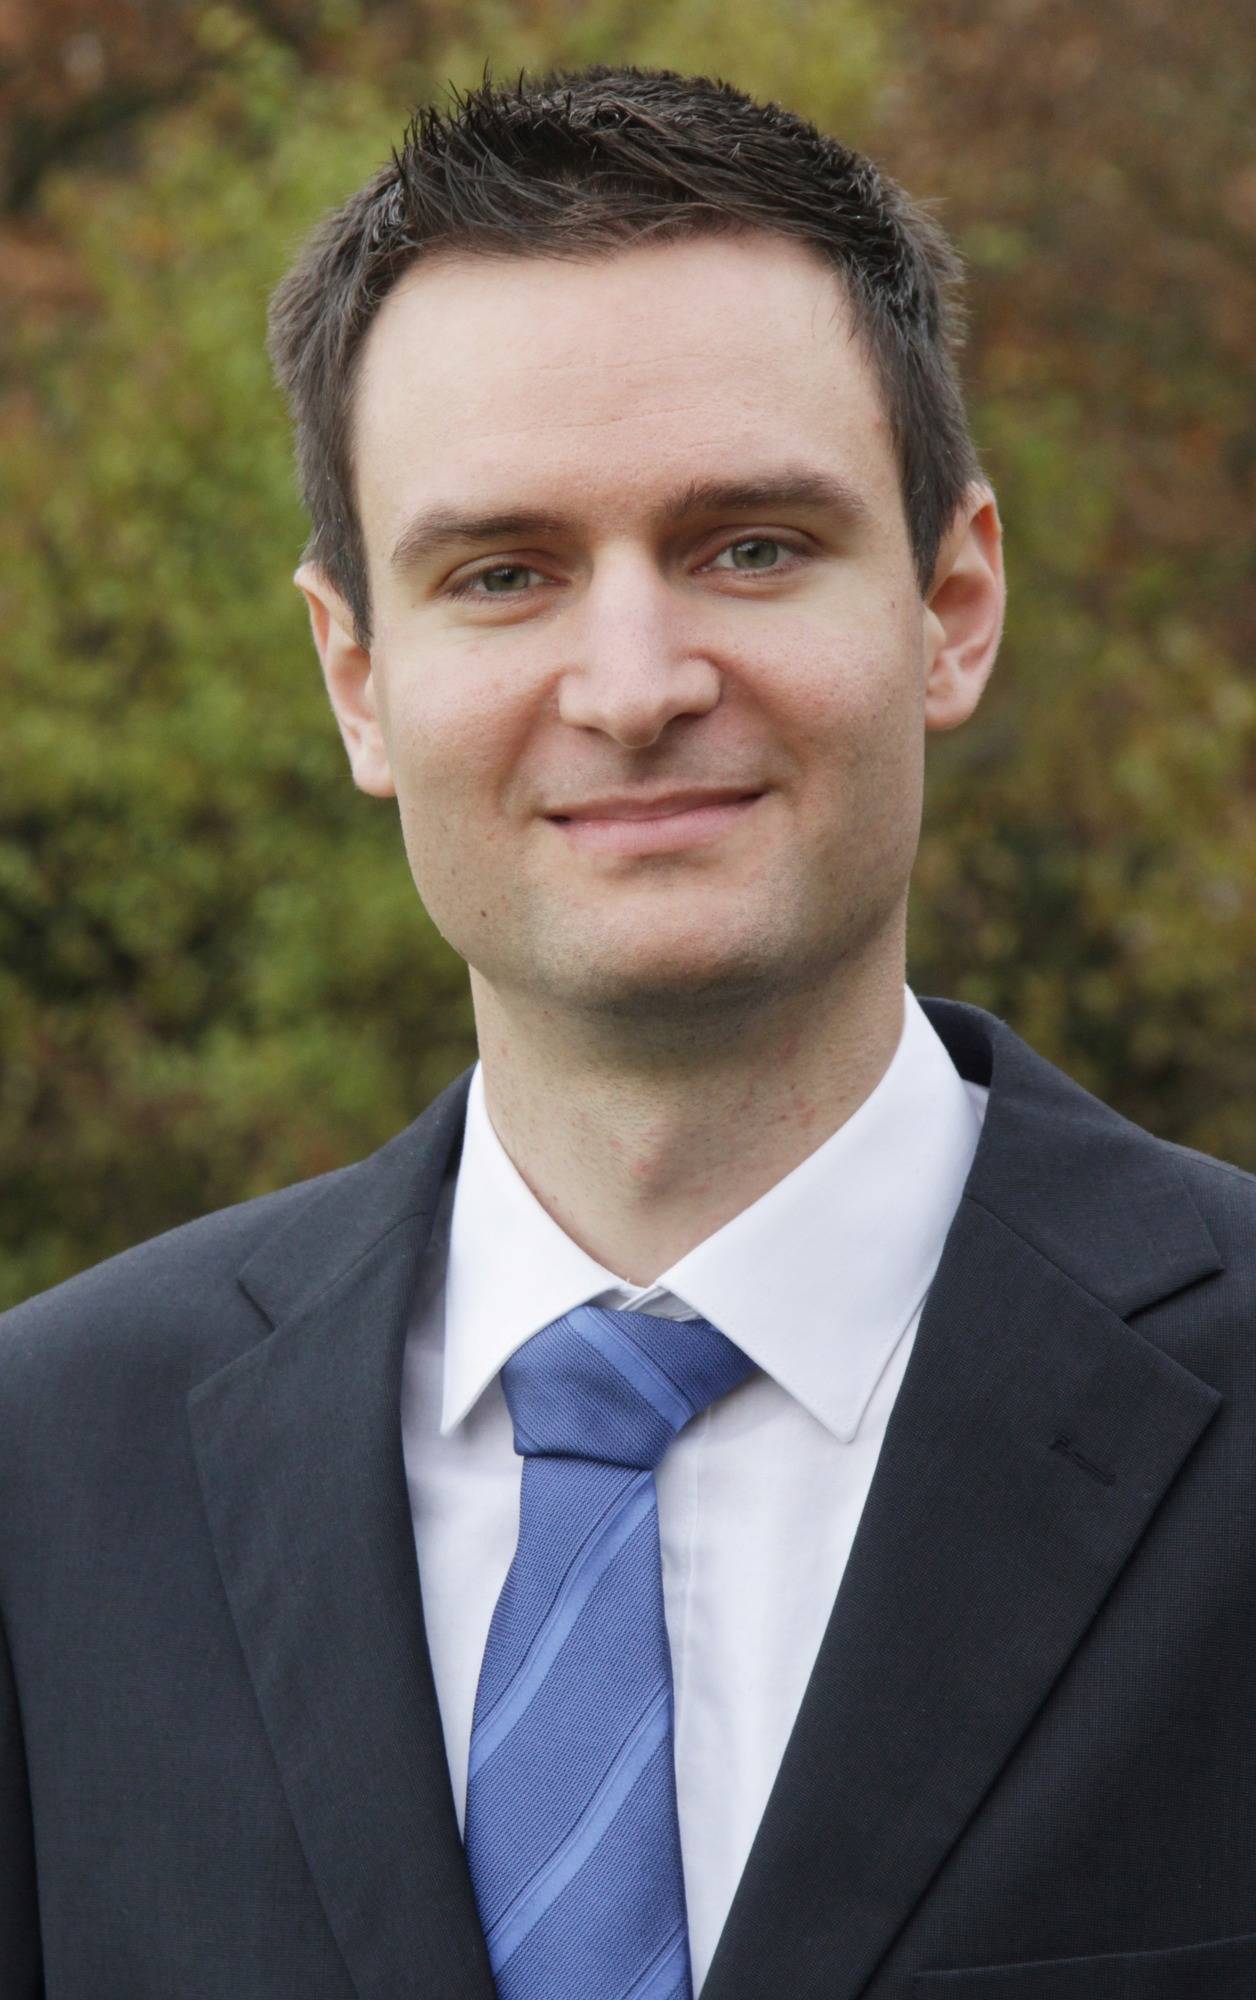 Bürgermeisterwahl in Billigheim: Martin Diblik (26) kandidiert